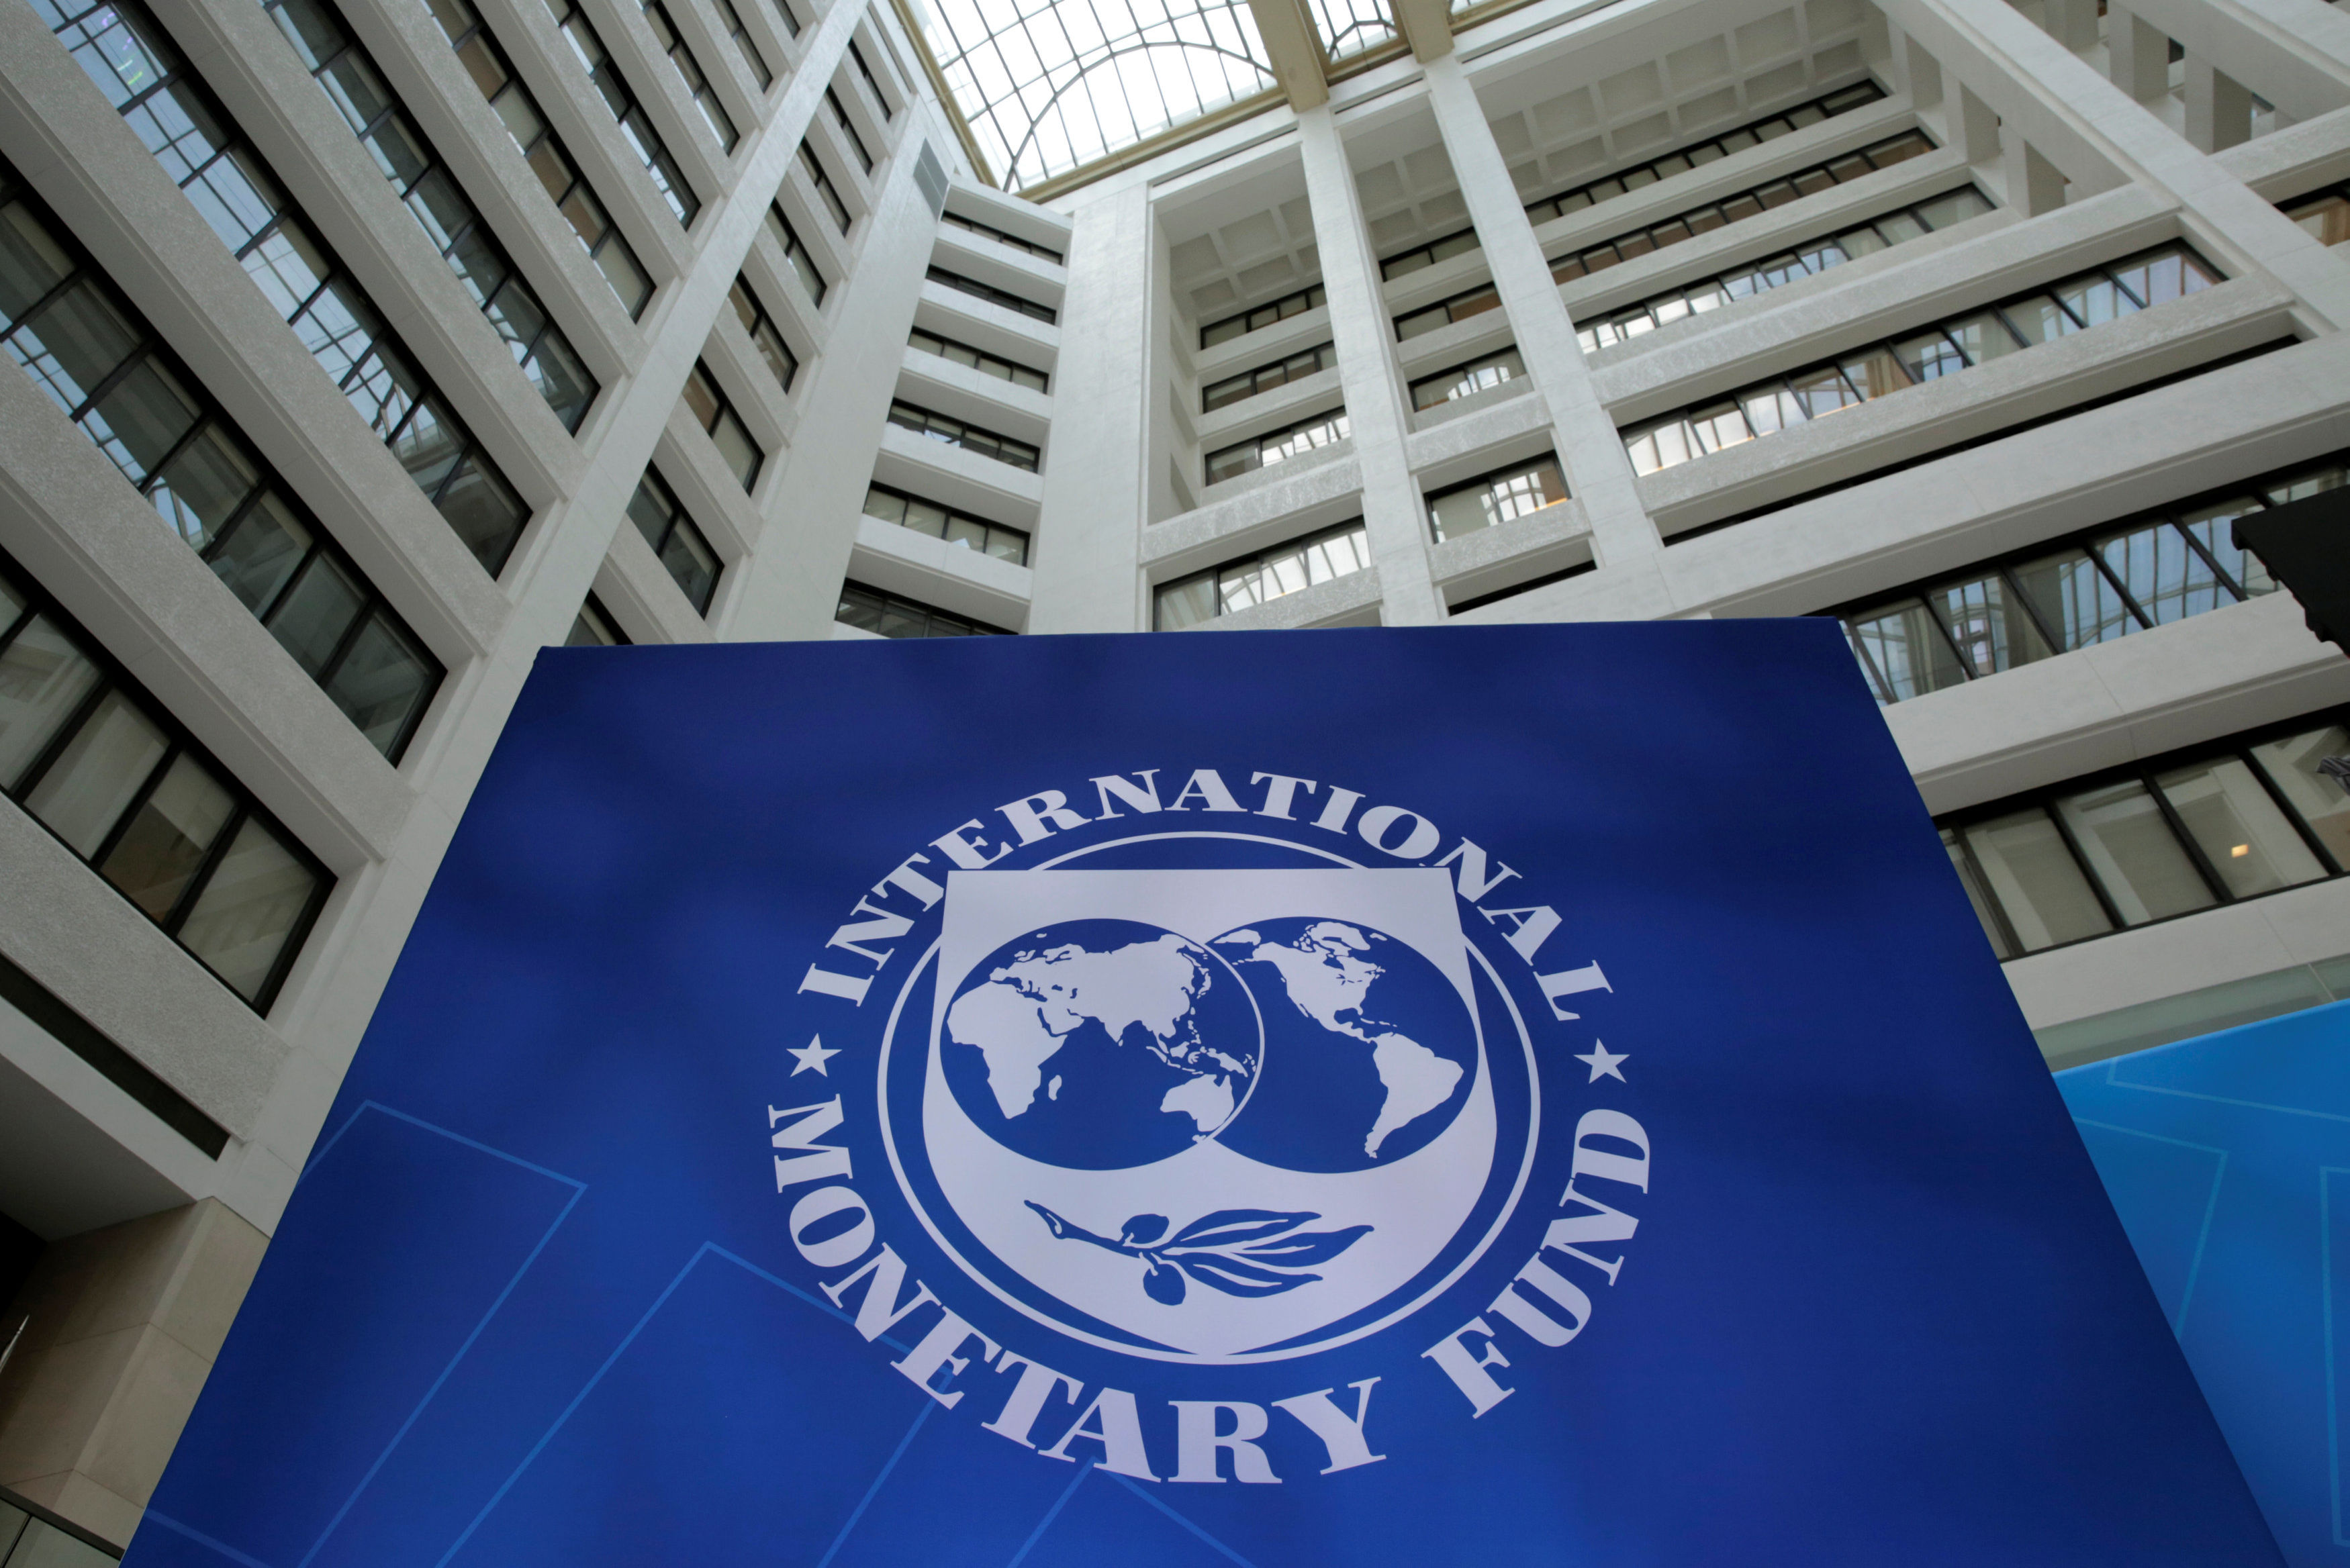 Мвф валюта. Международный валютный фонд (МВФ) - International monetary Fund (IMF). Здание МВФ США. Флаг МВФ. Здание МВФ В Вашингтоне.